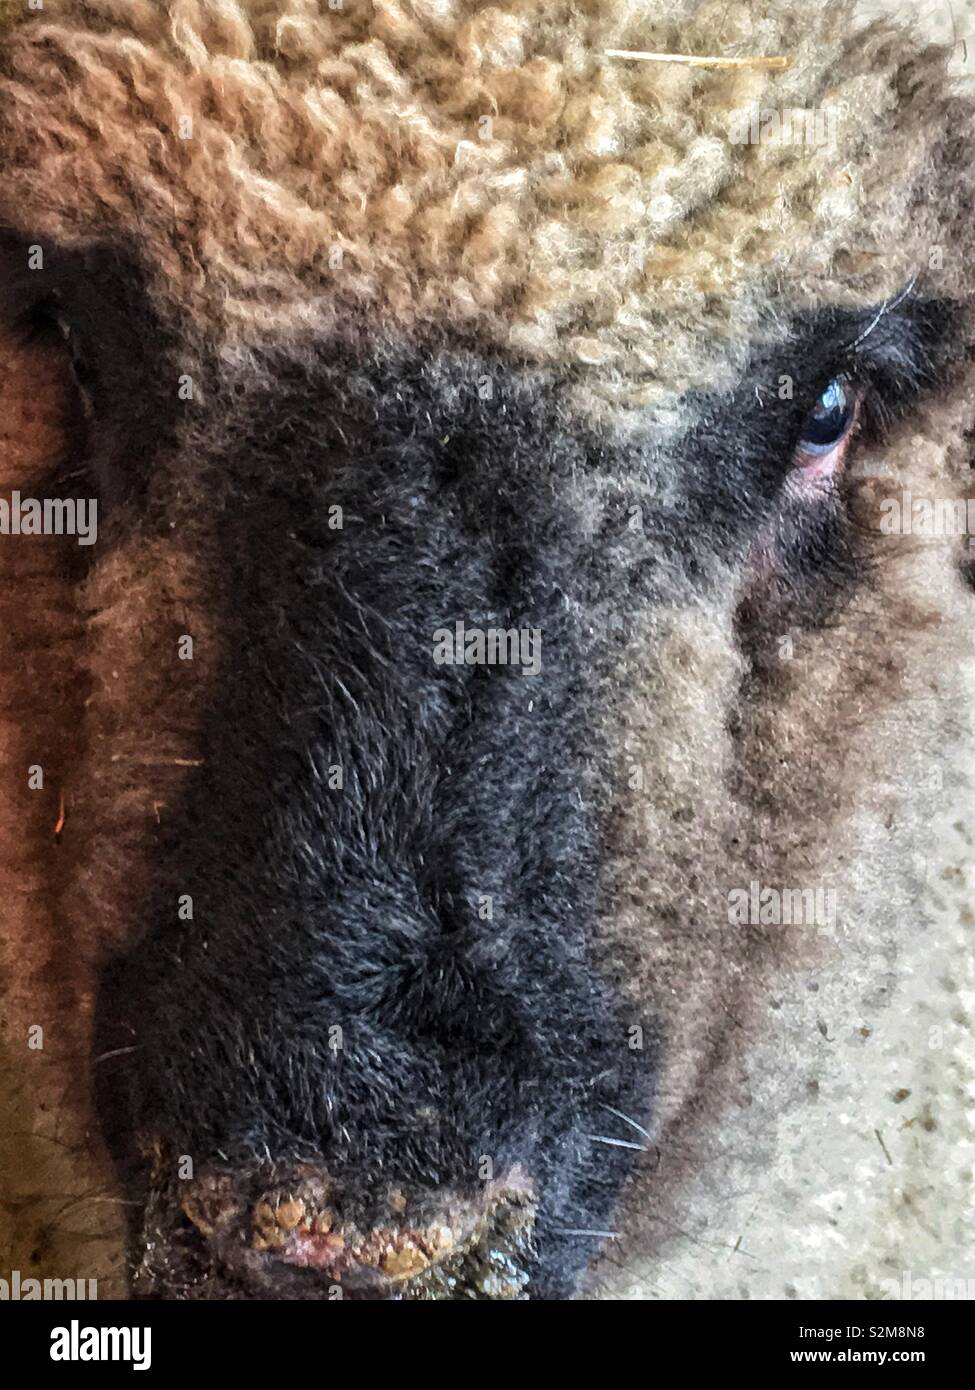 Plage de sain les moutons regardant la caméra. Banque D'Images